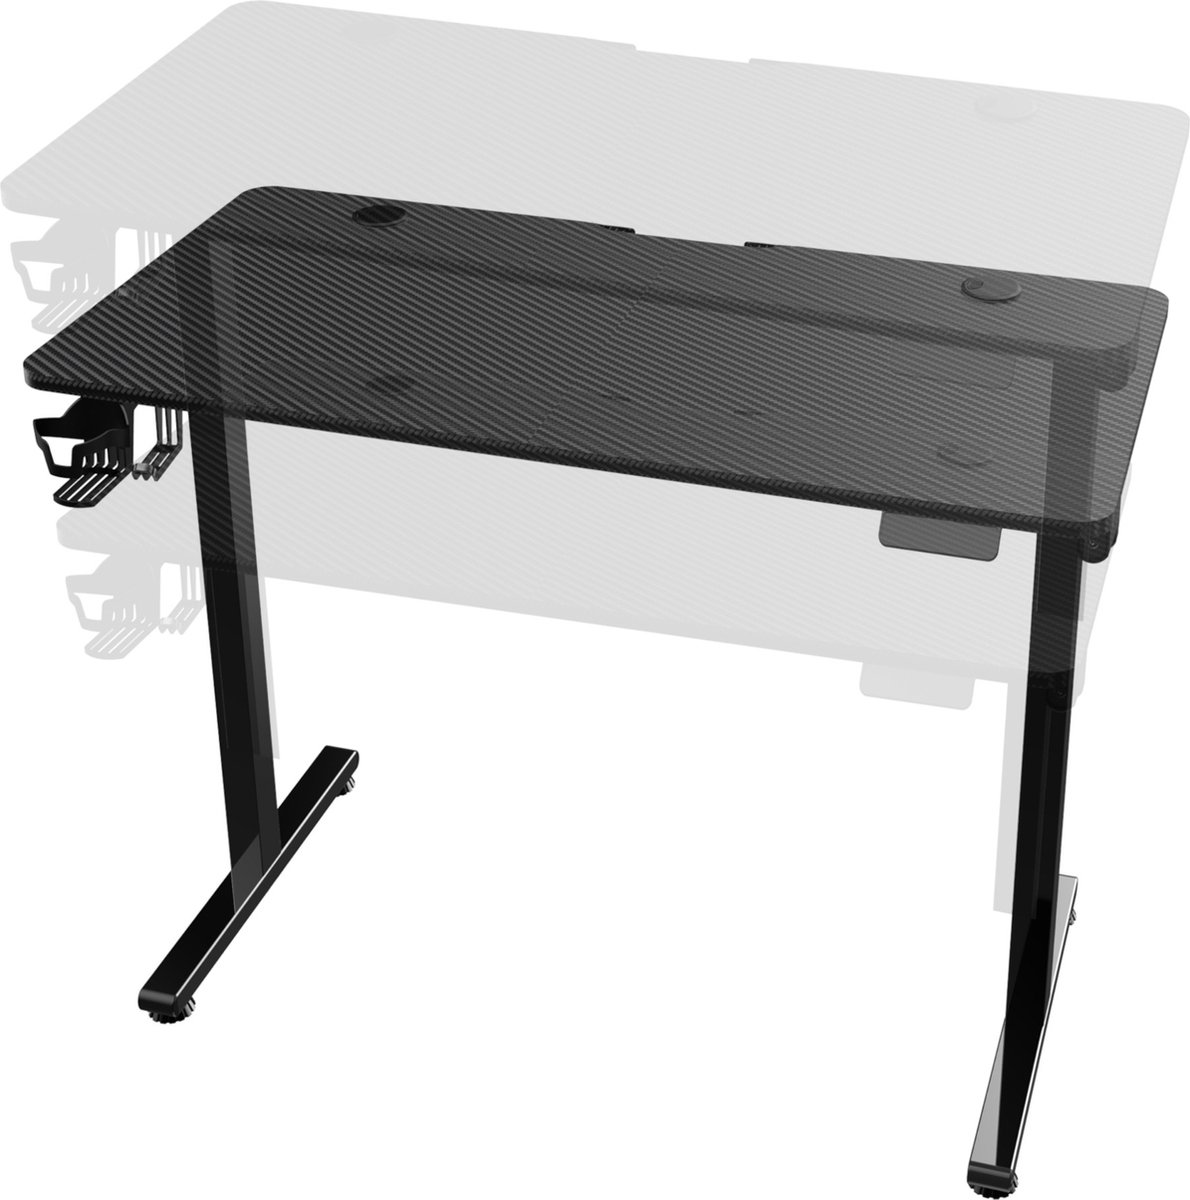 Game Desk Ria - Zit Bureau - Sta Bureau - Elektrisch - 120x60x72-117cm - Zwart - Geheugenfunctie